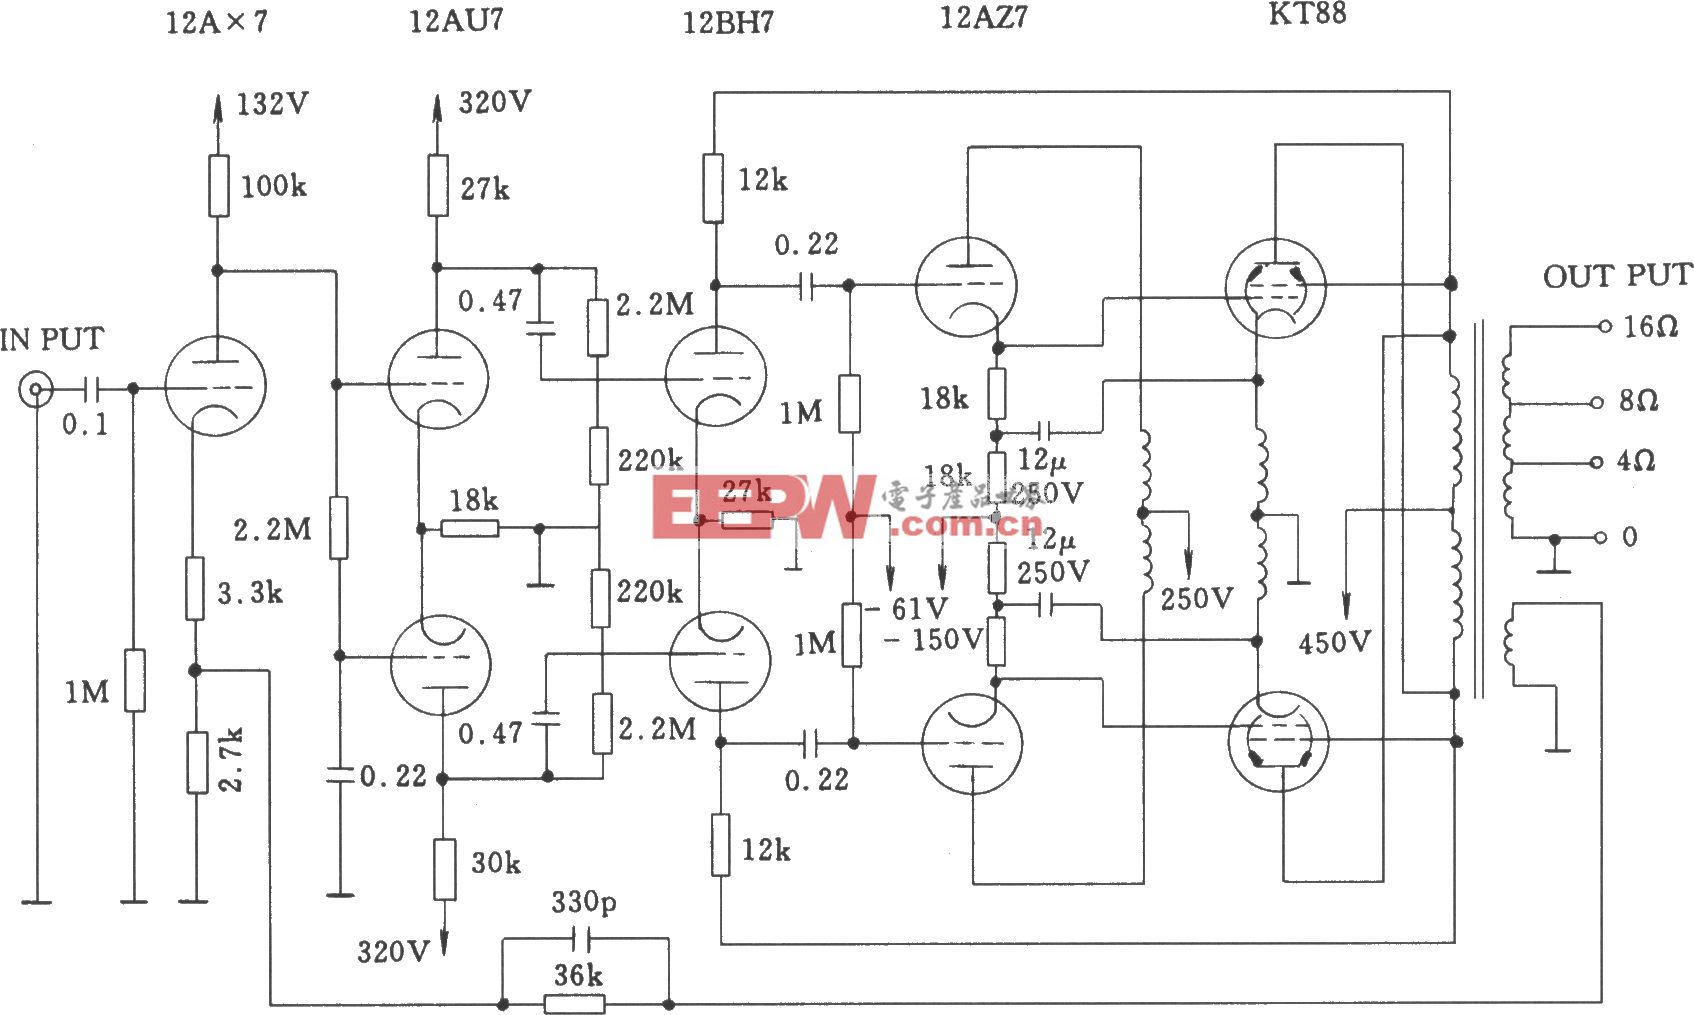 电子管麦景图MC-275(McIntosh 275)功率放大器电路图